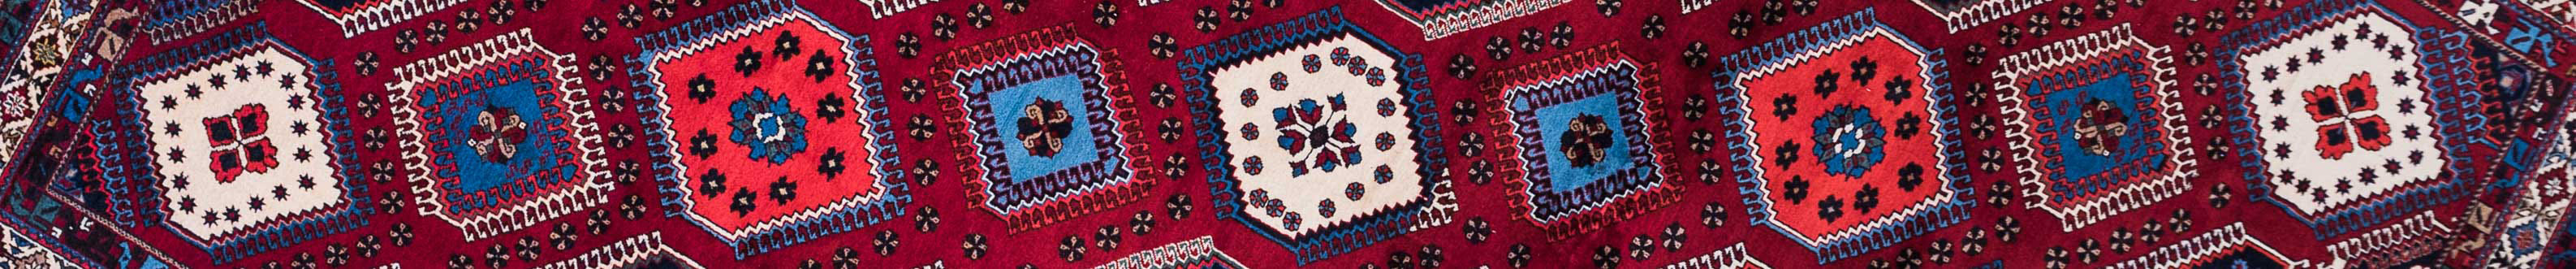 Yalameh Persian Carpet Rug N1Carpet Canada Montreal Tapis Persan 5750